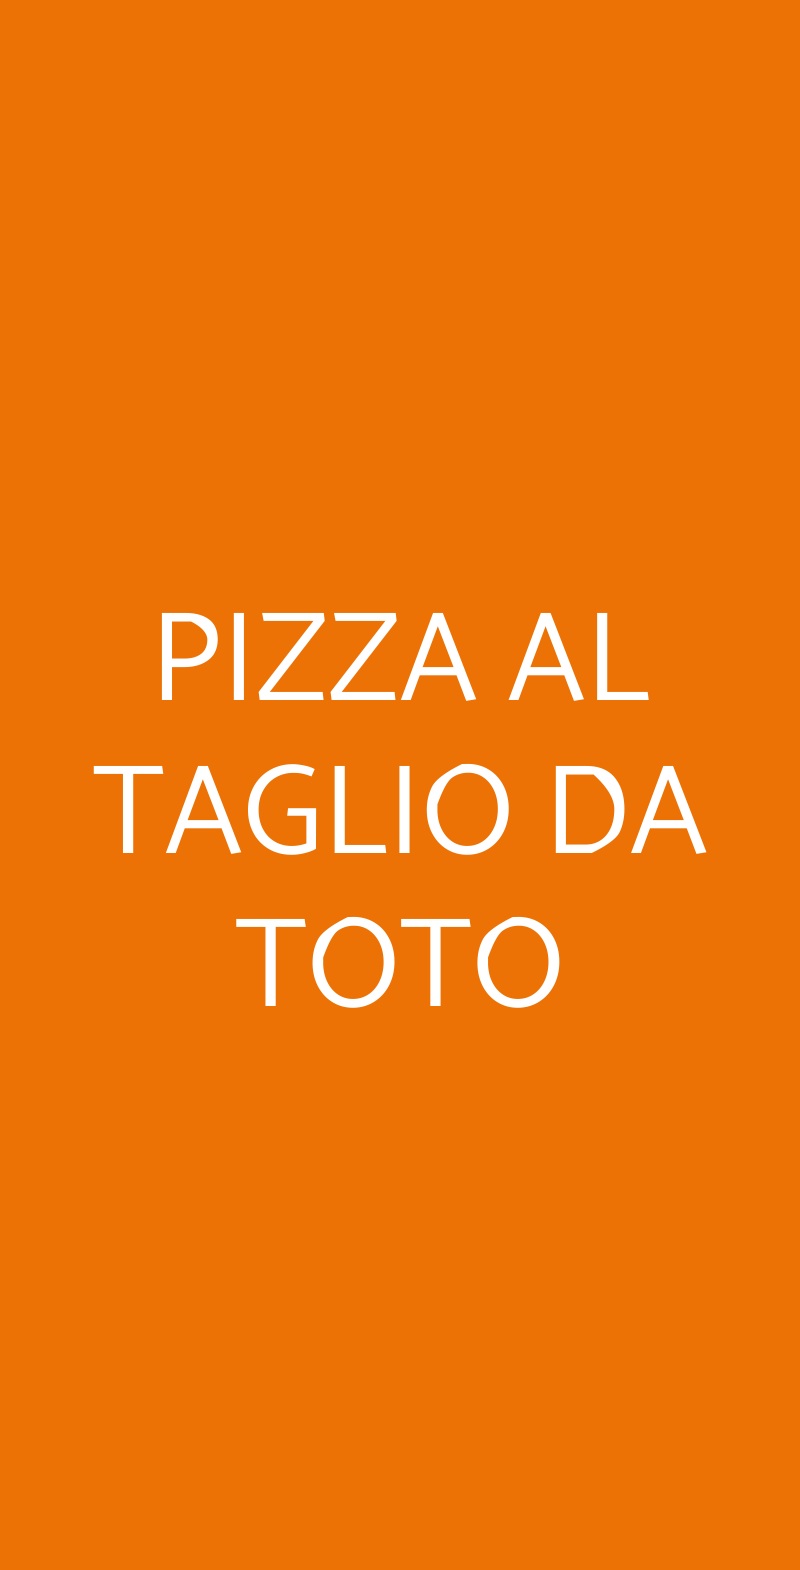 PIZZA AL TAGLIO DA TOTO Milano menù 1 pagina